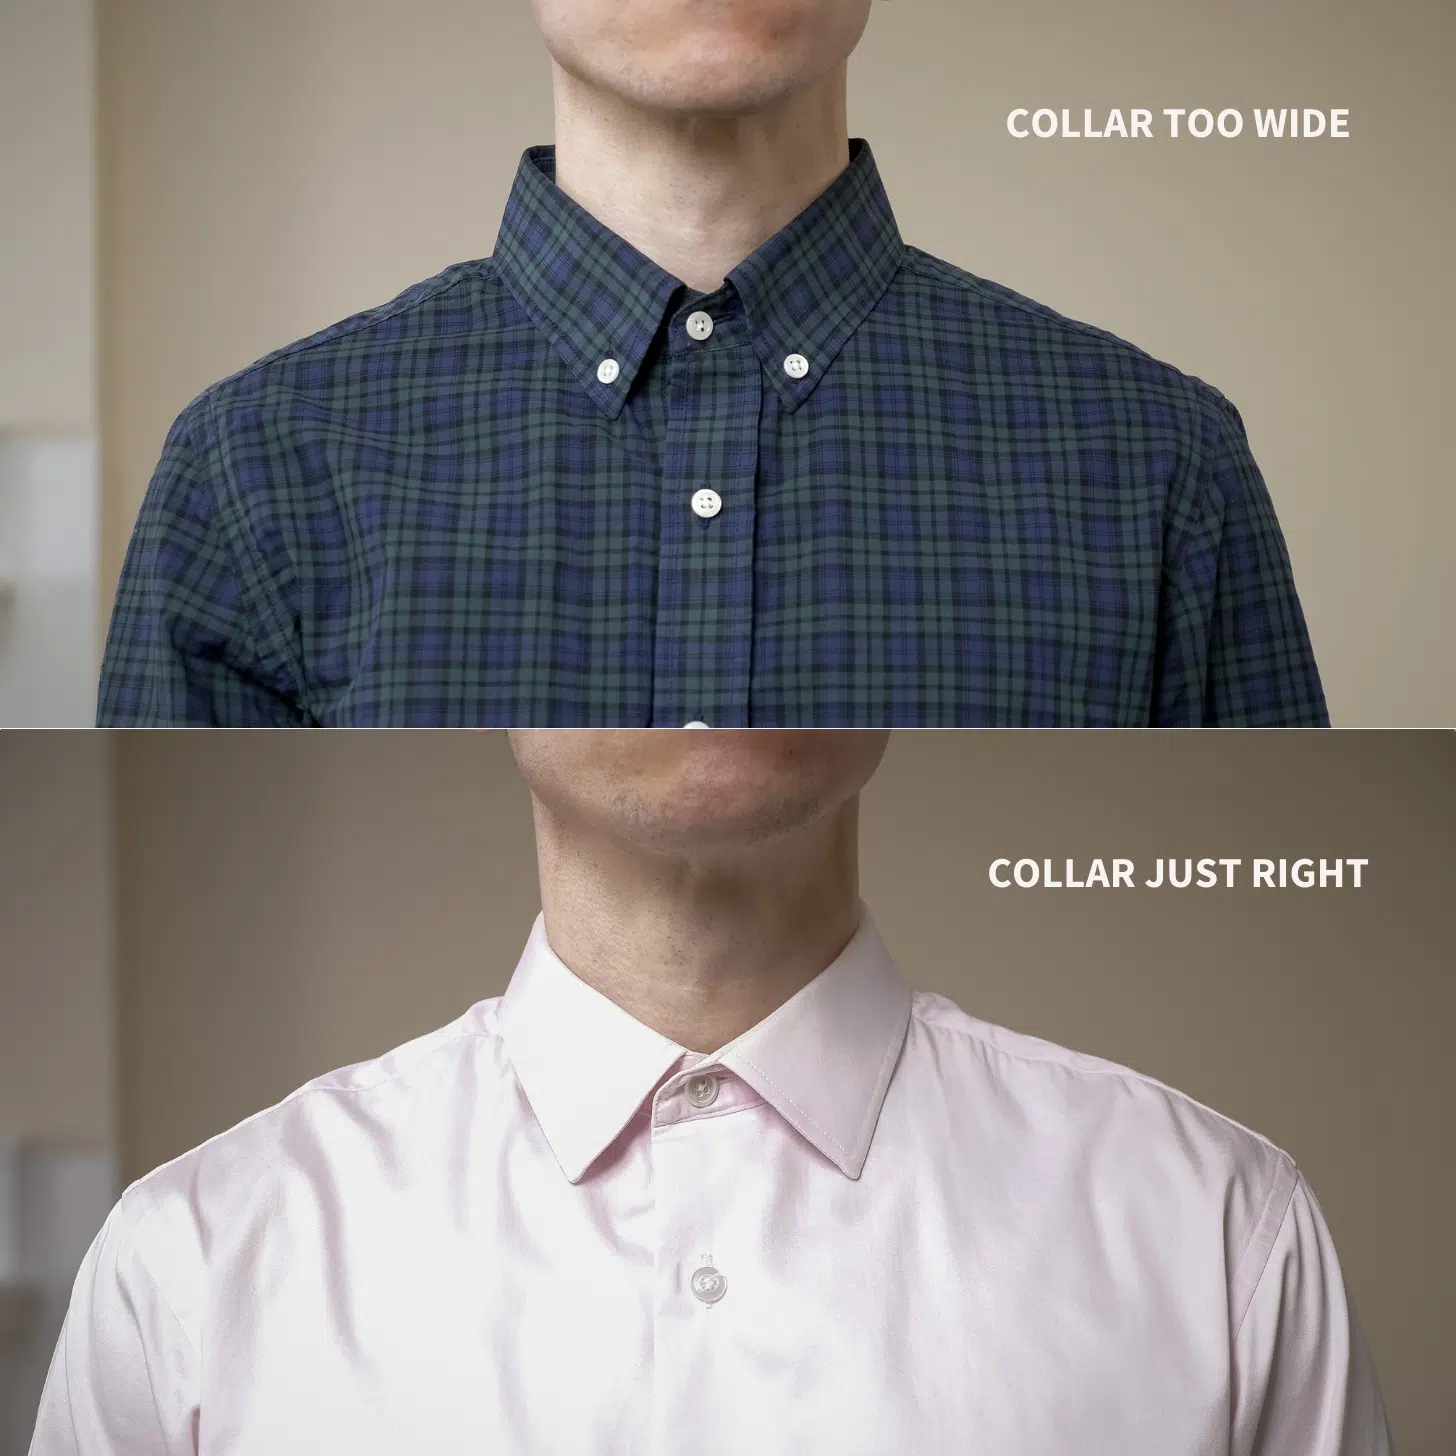 Shirt collar fit